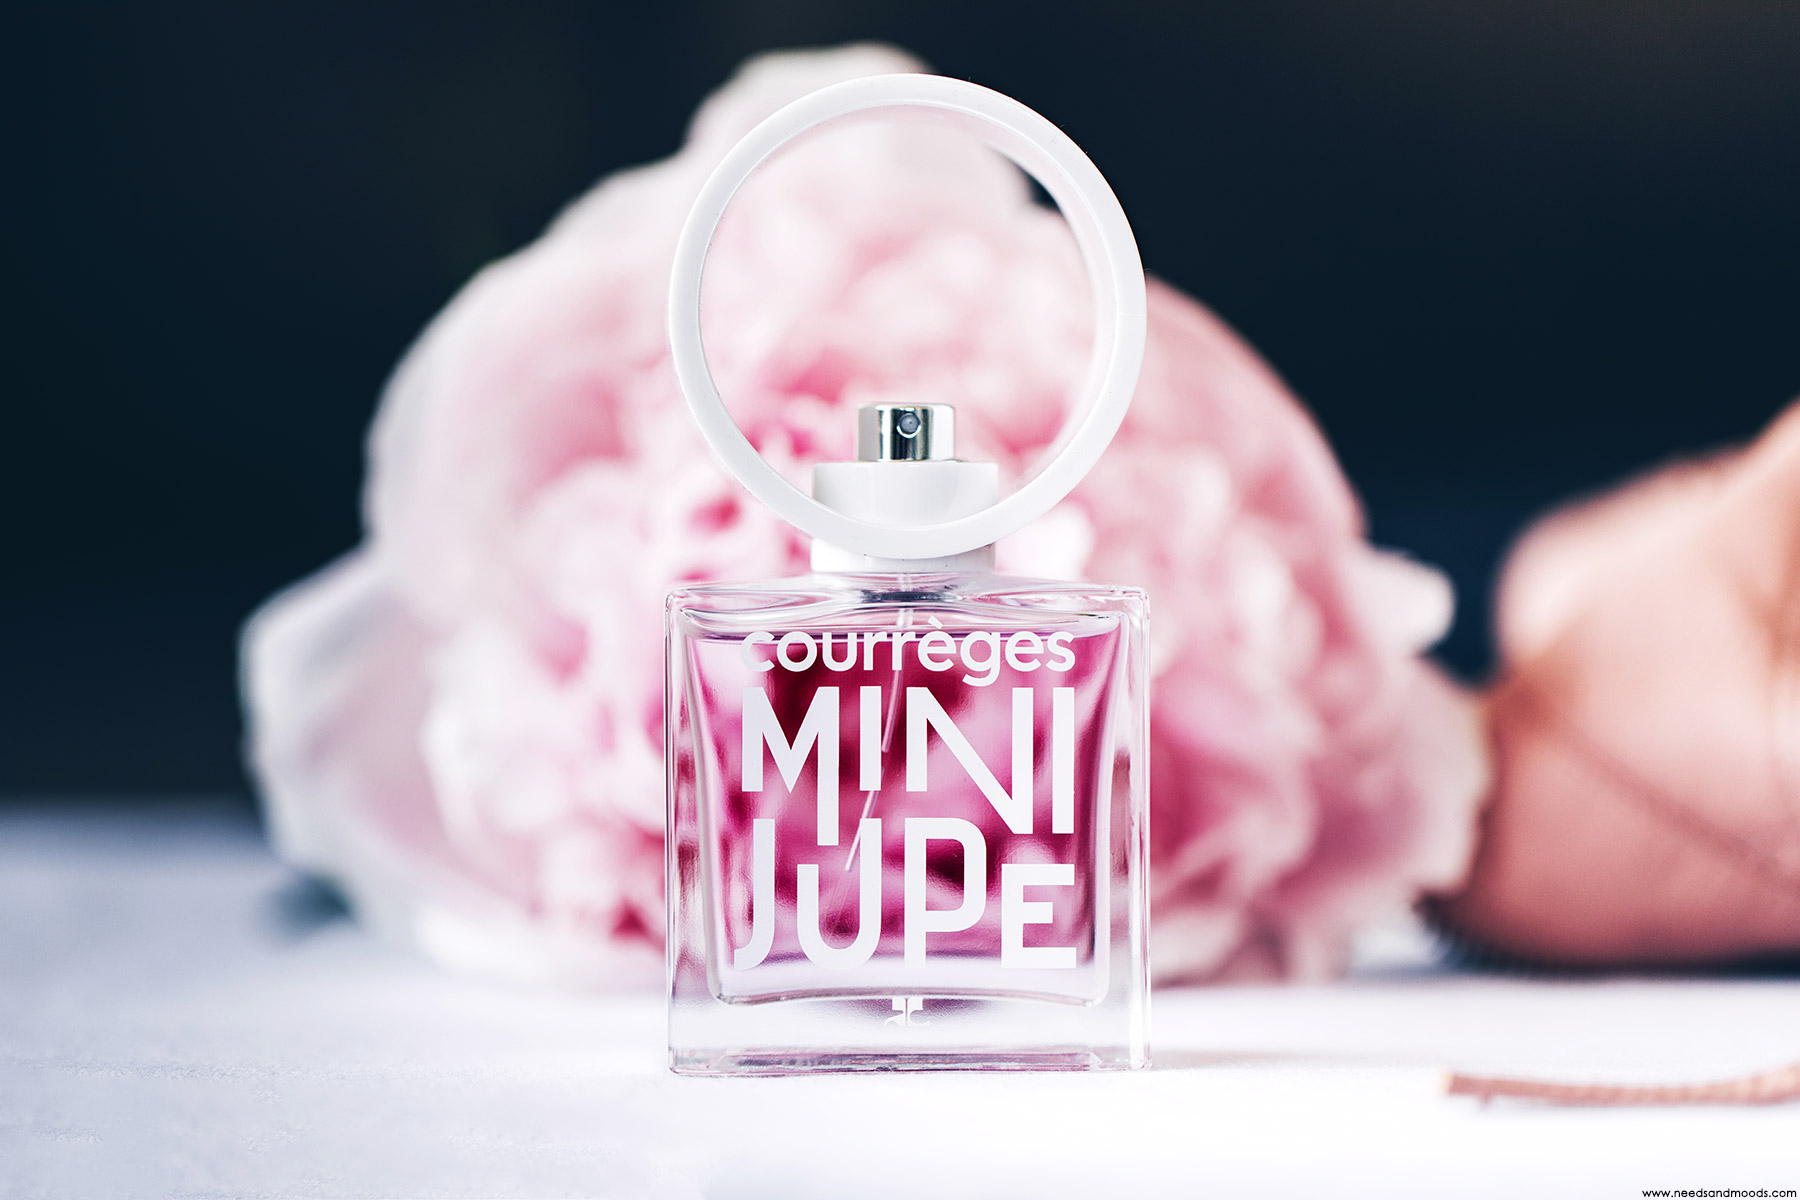 Mini Jupe, le nouveau parfum signé Courrèges !